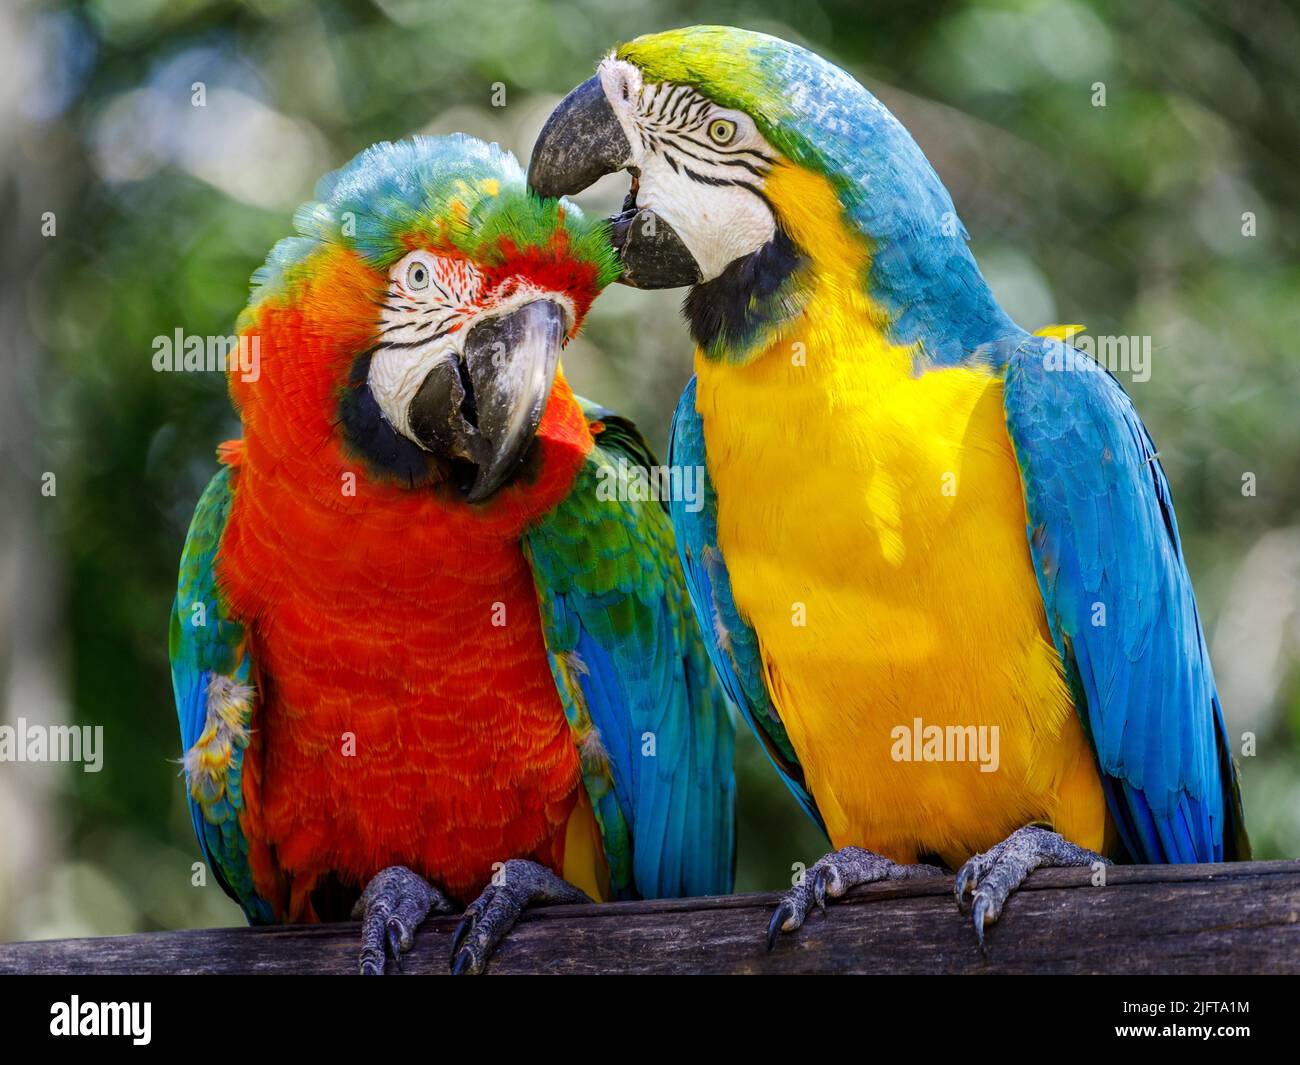 Deux perroquets - oiseaux tropicaux colorés Pantanal, Brésil Banque D'Images